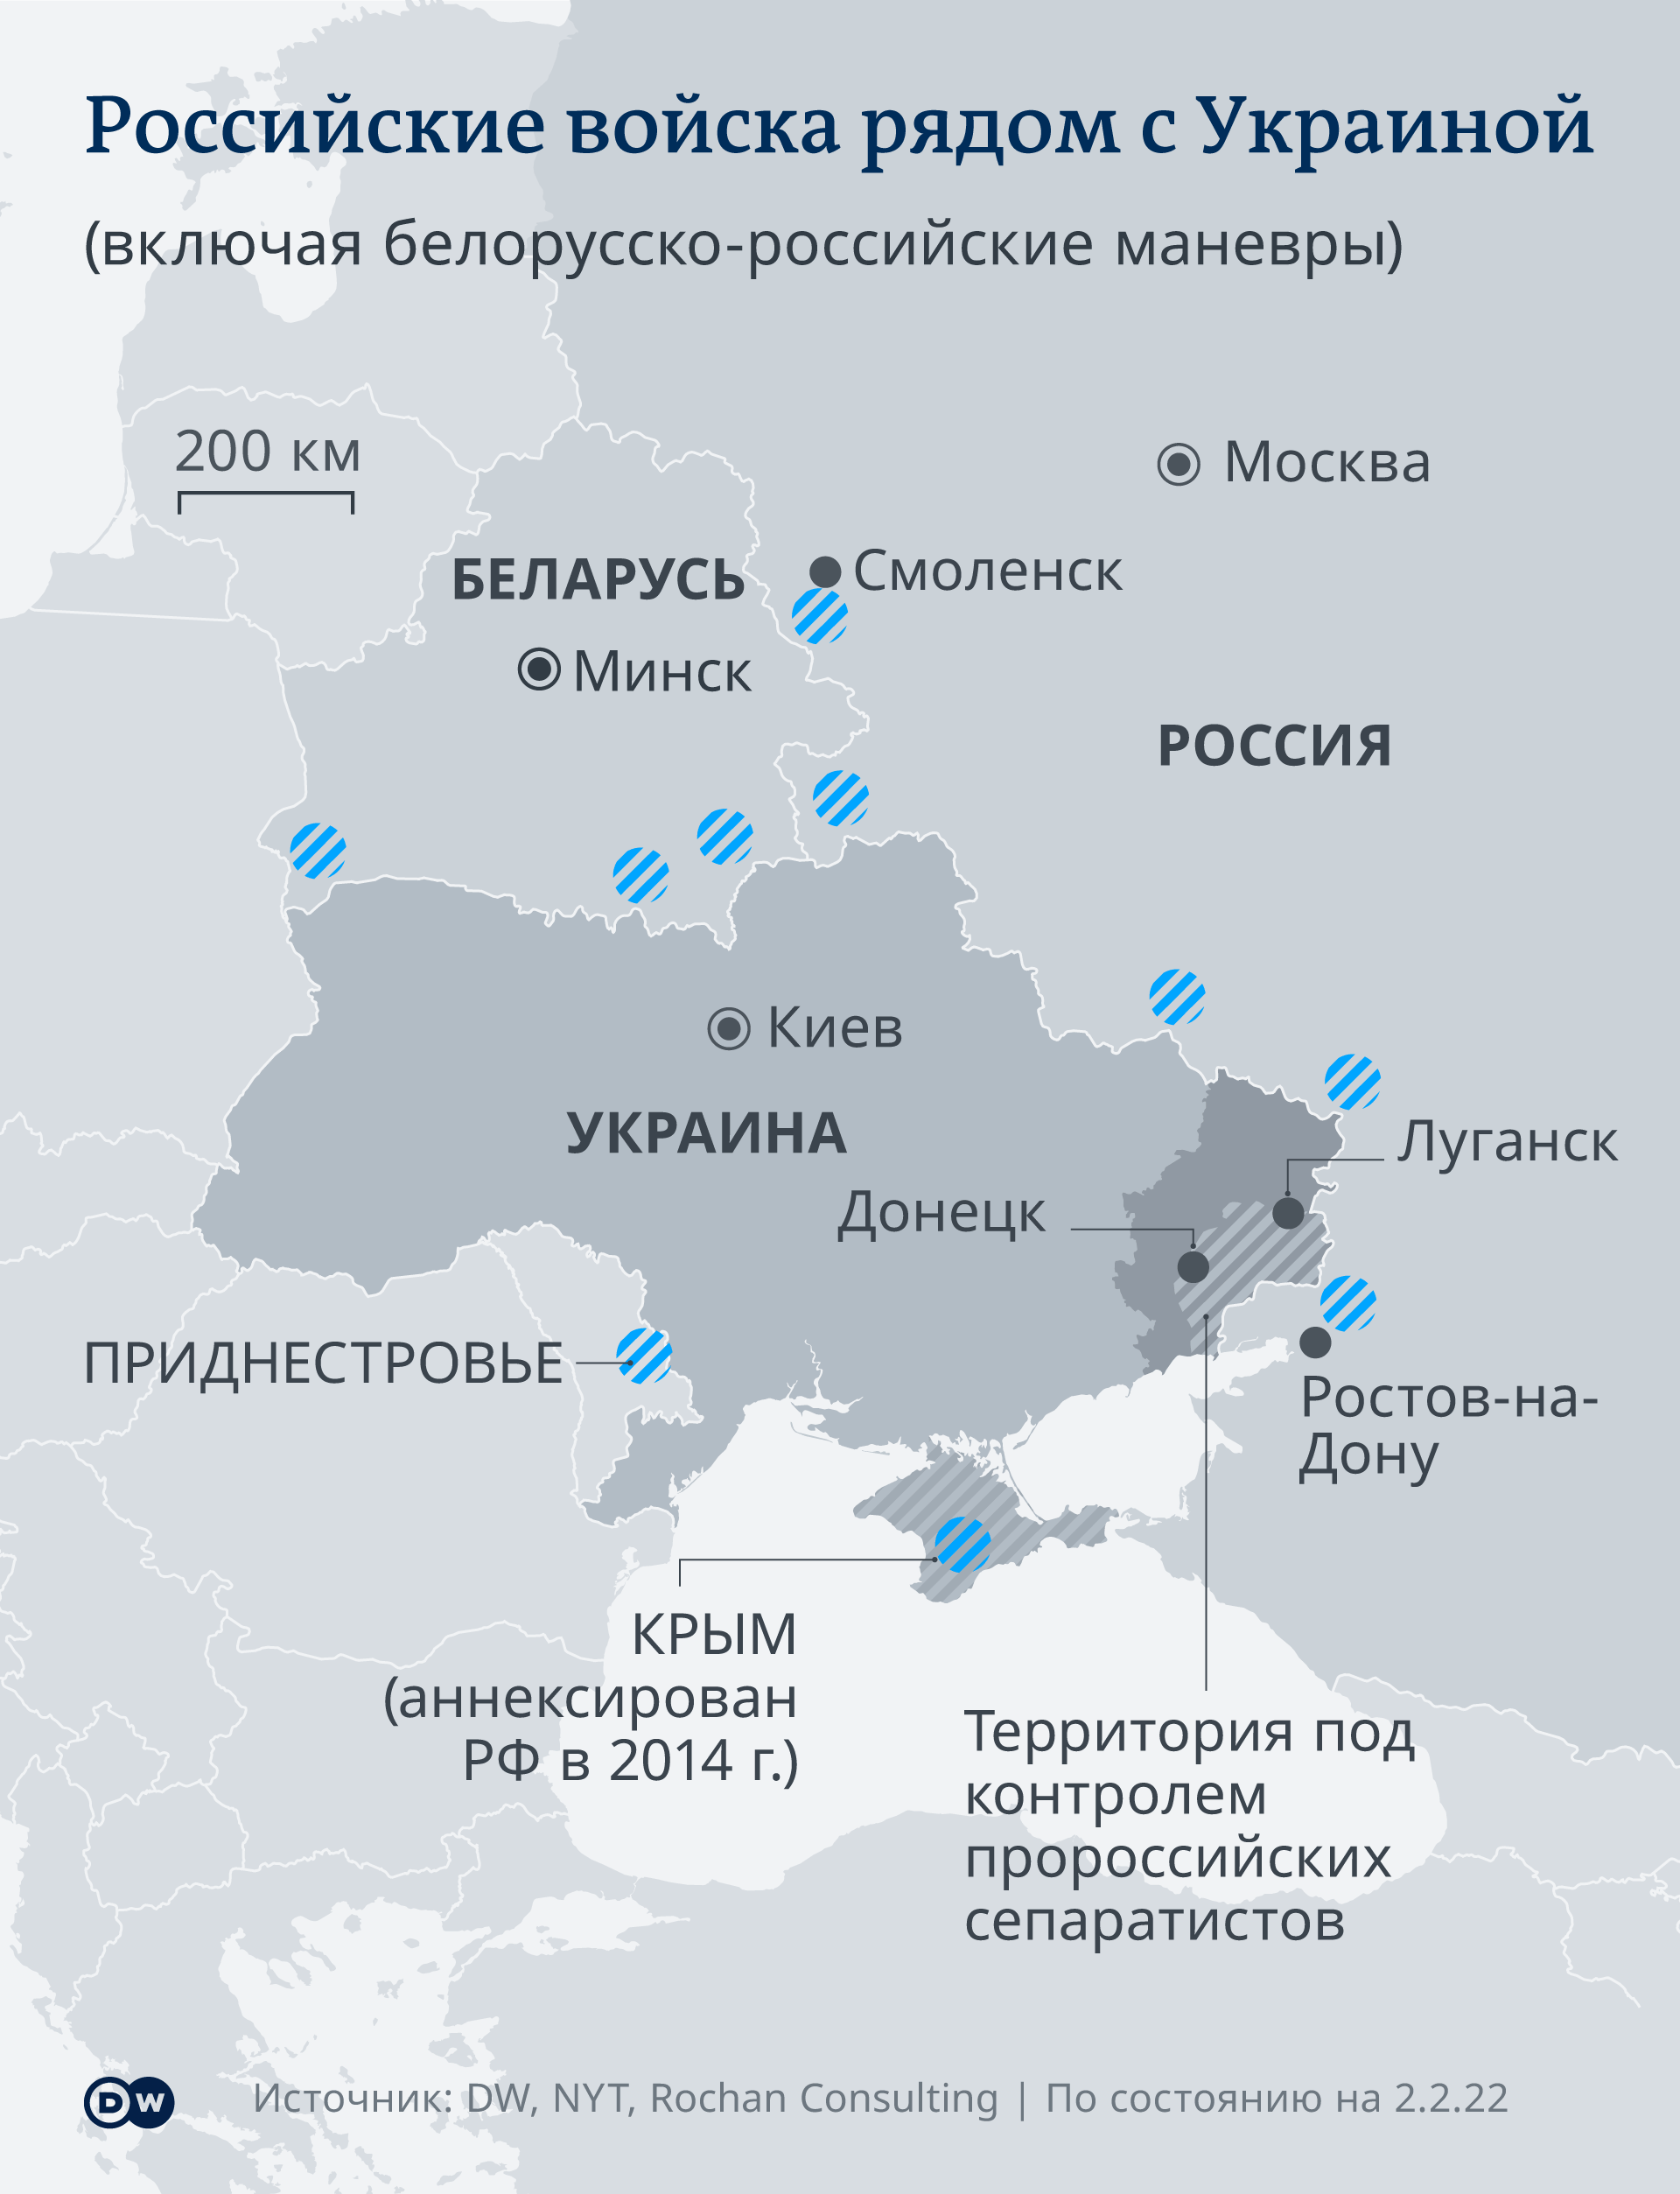 Инфографика Российские войска на границе Украины